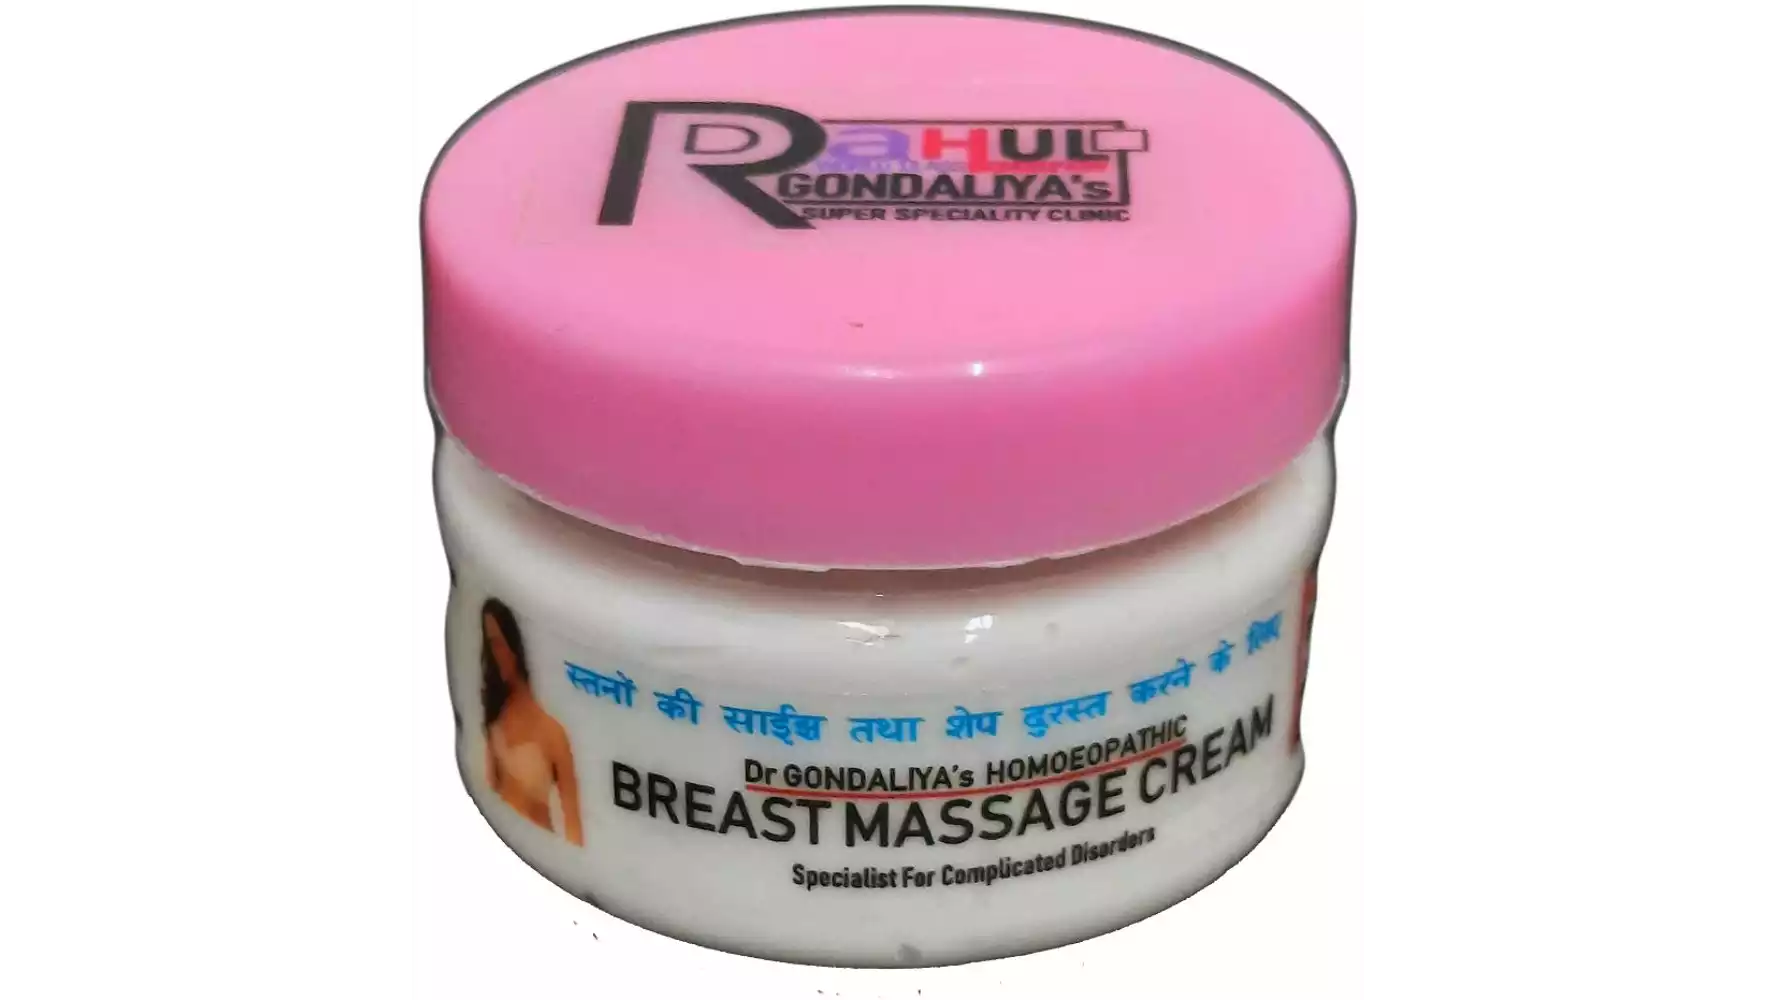 Dr Gondaliyas Homoeopathic Breast Massage Cream (200g)